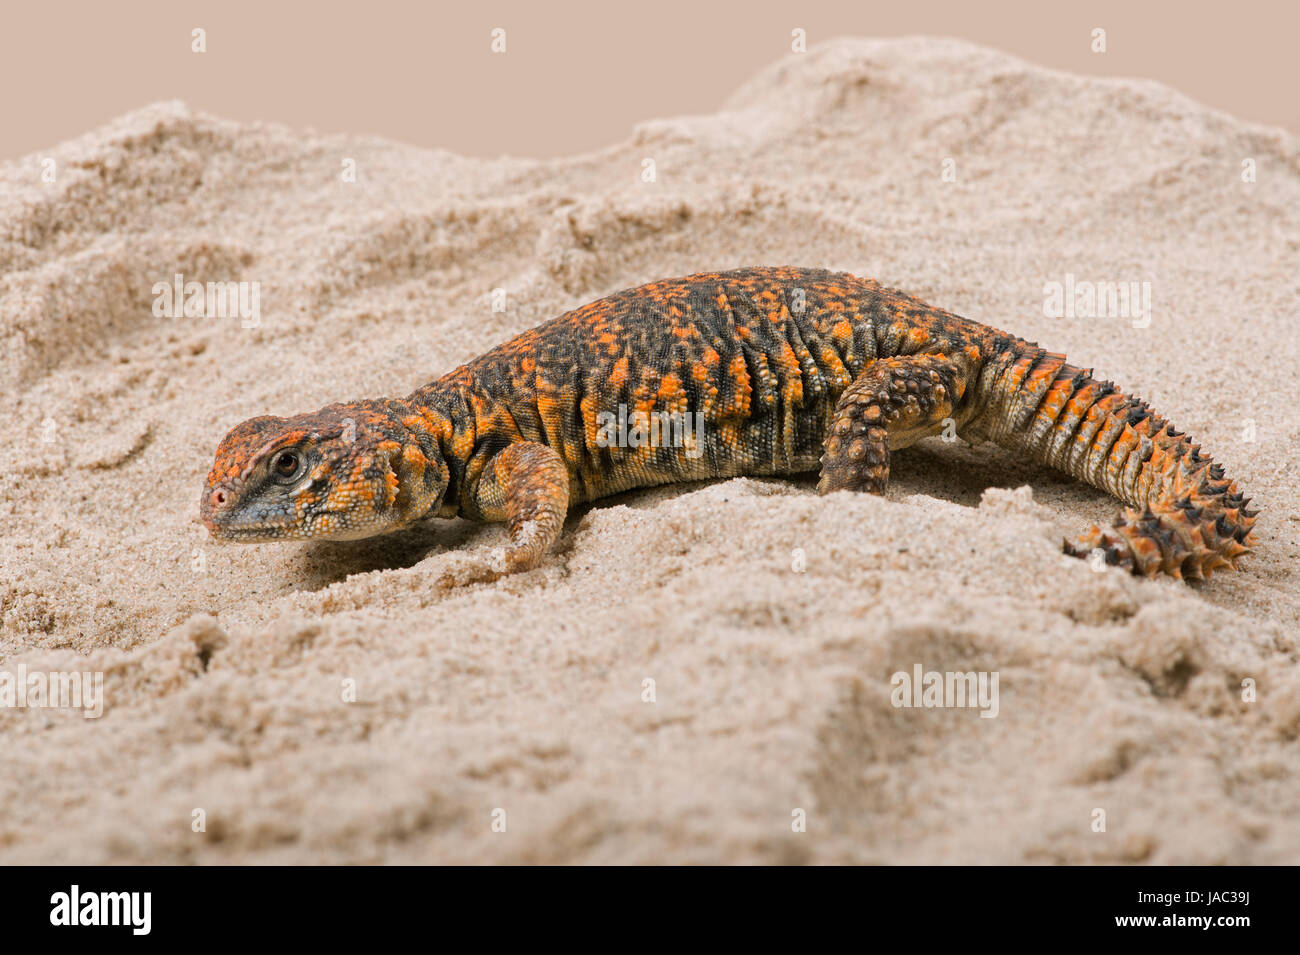 Saharan Spiny Tailed Lizard (Uromastyx geyri) Stock Photo